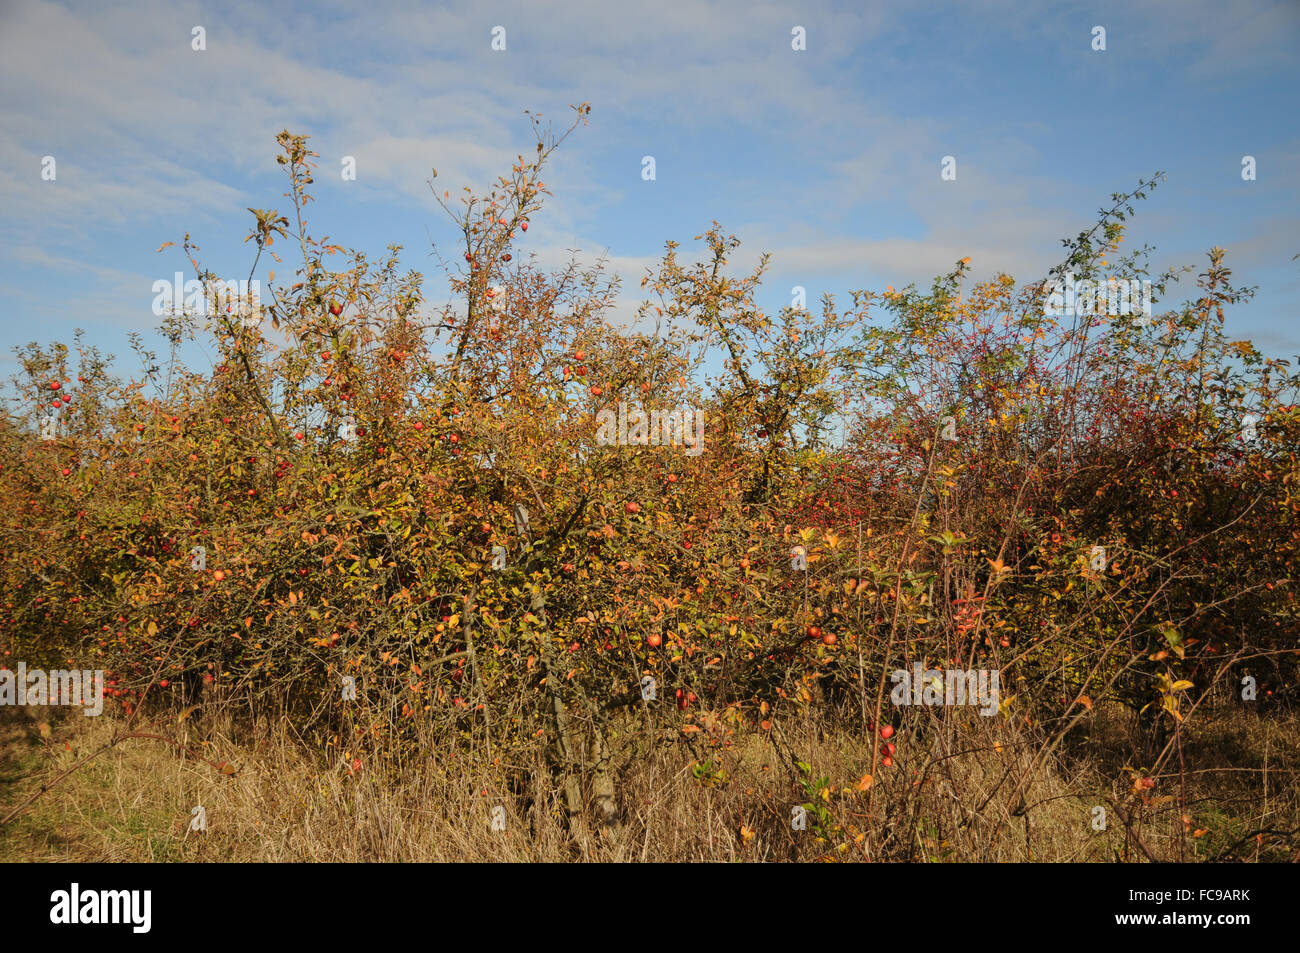 Huerto de manzanos Foto de stock